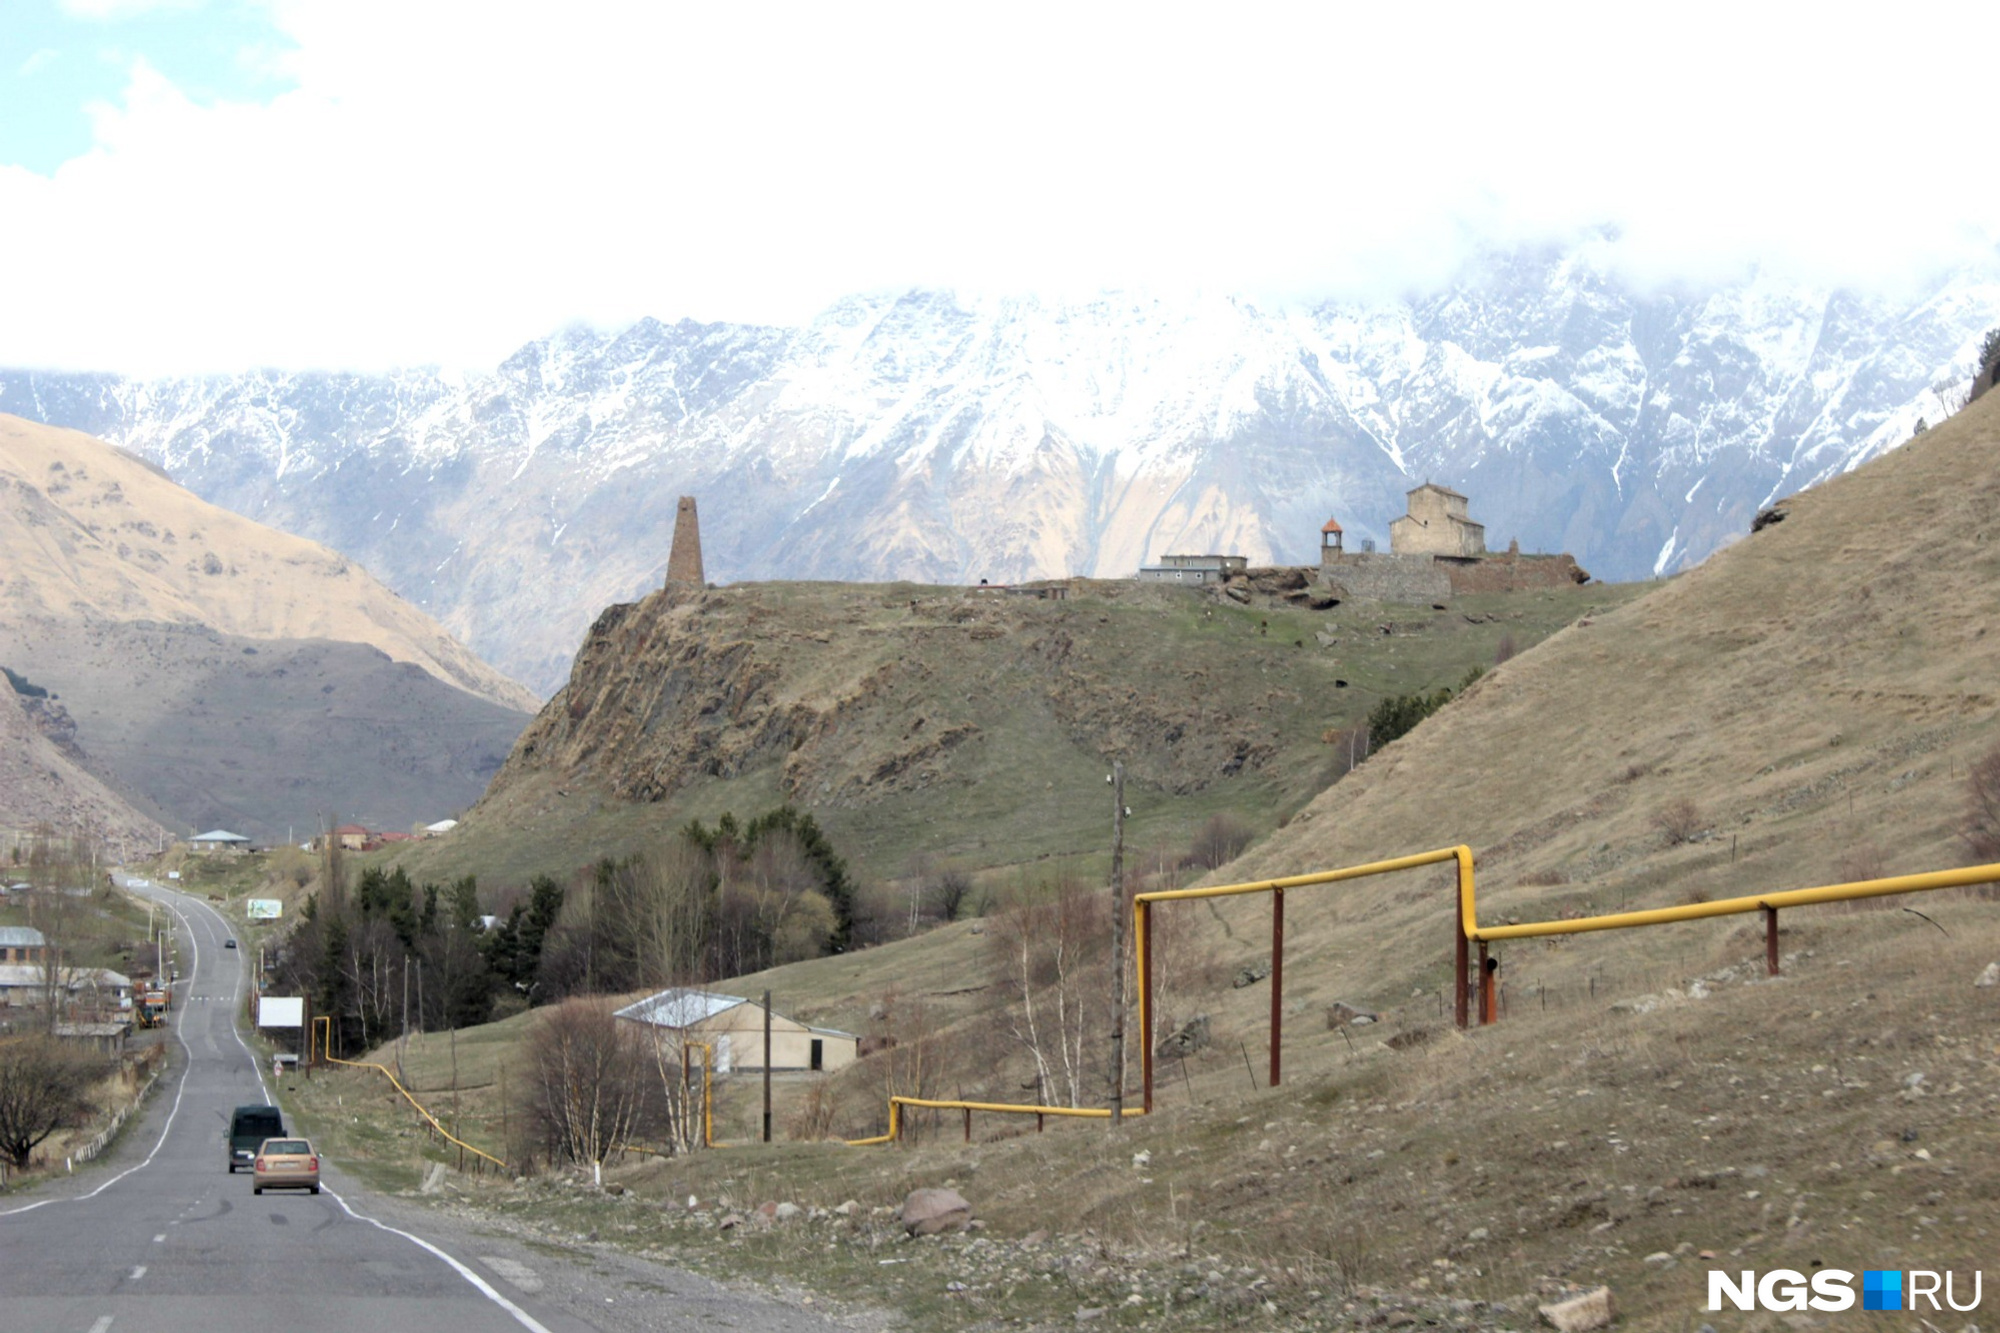 Военно-Грузинская дорога, ведущая от Тбилиси на север. Фото Стаса Соколова